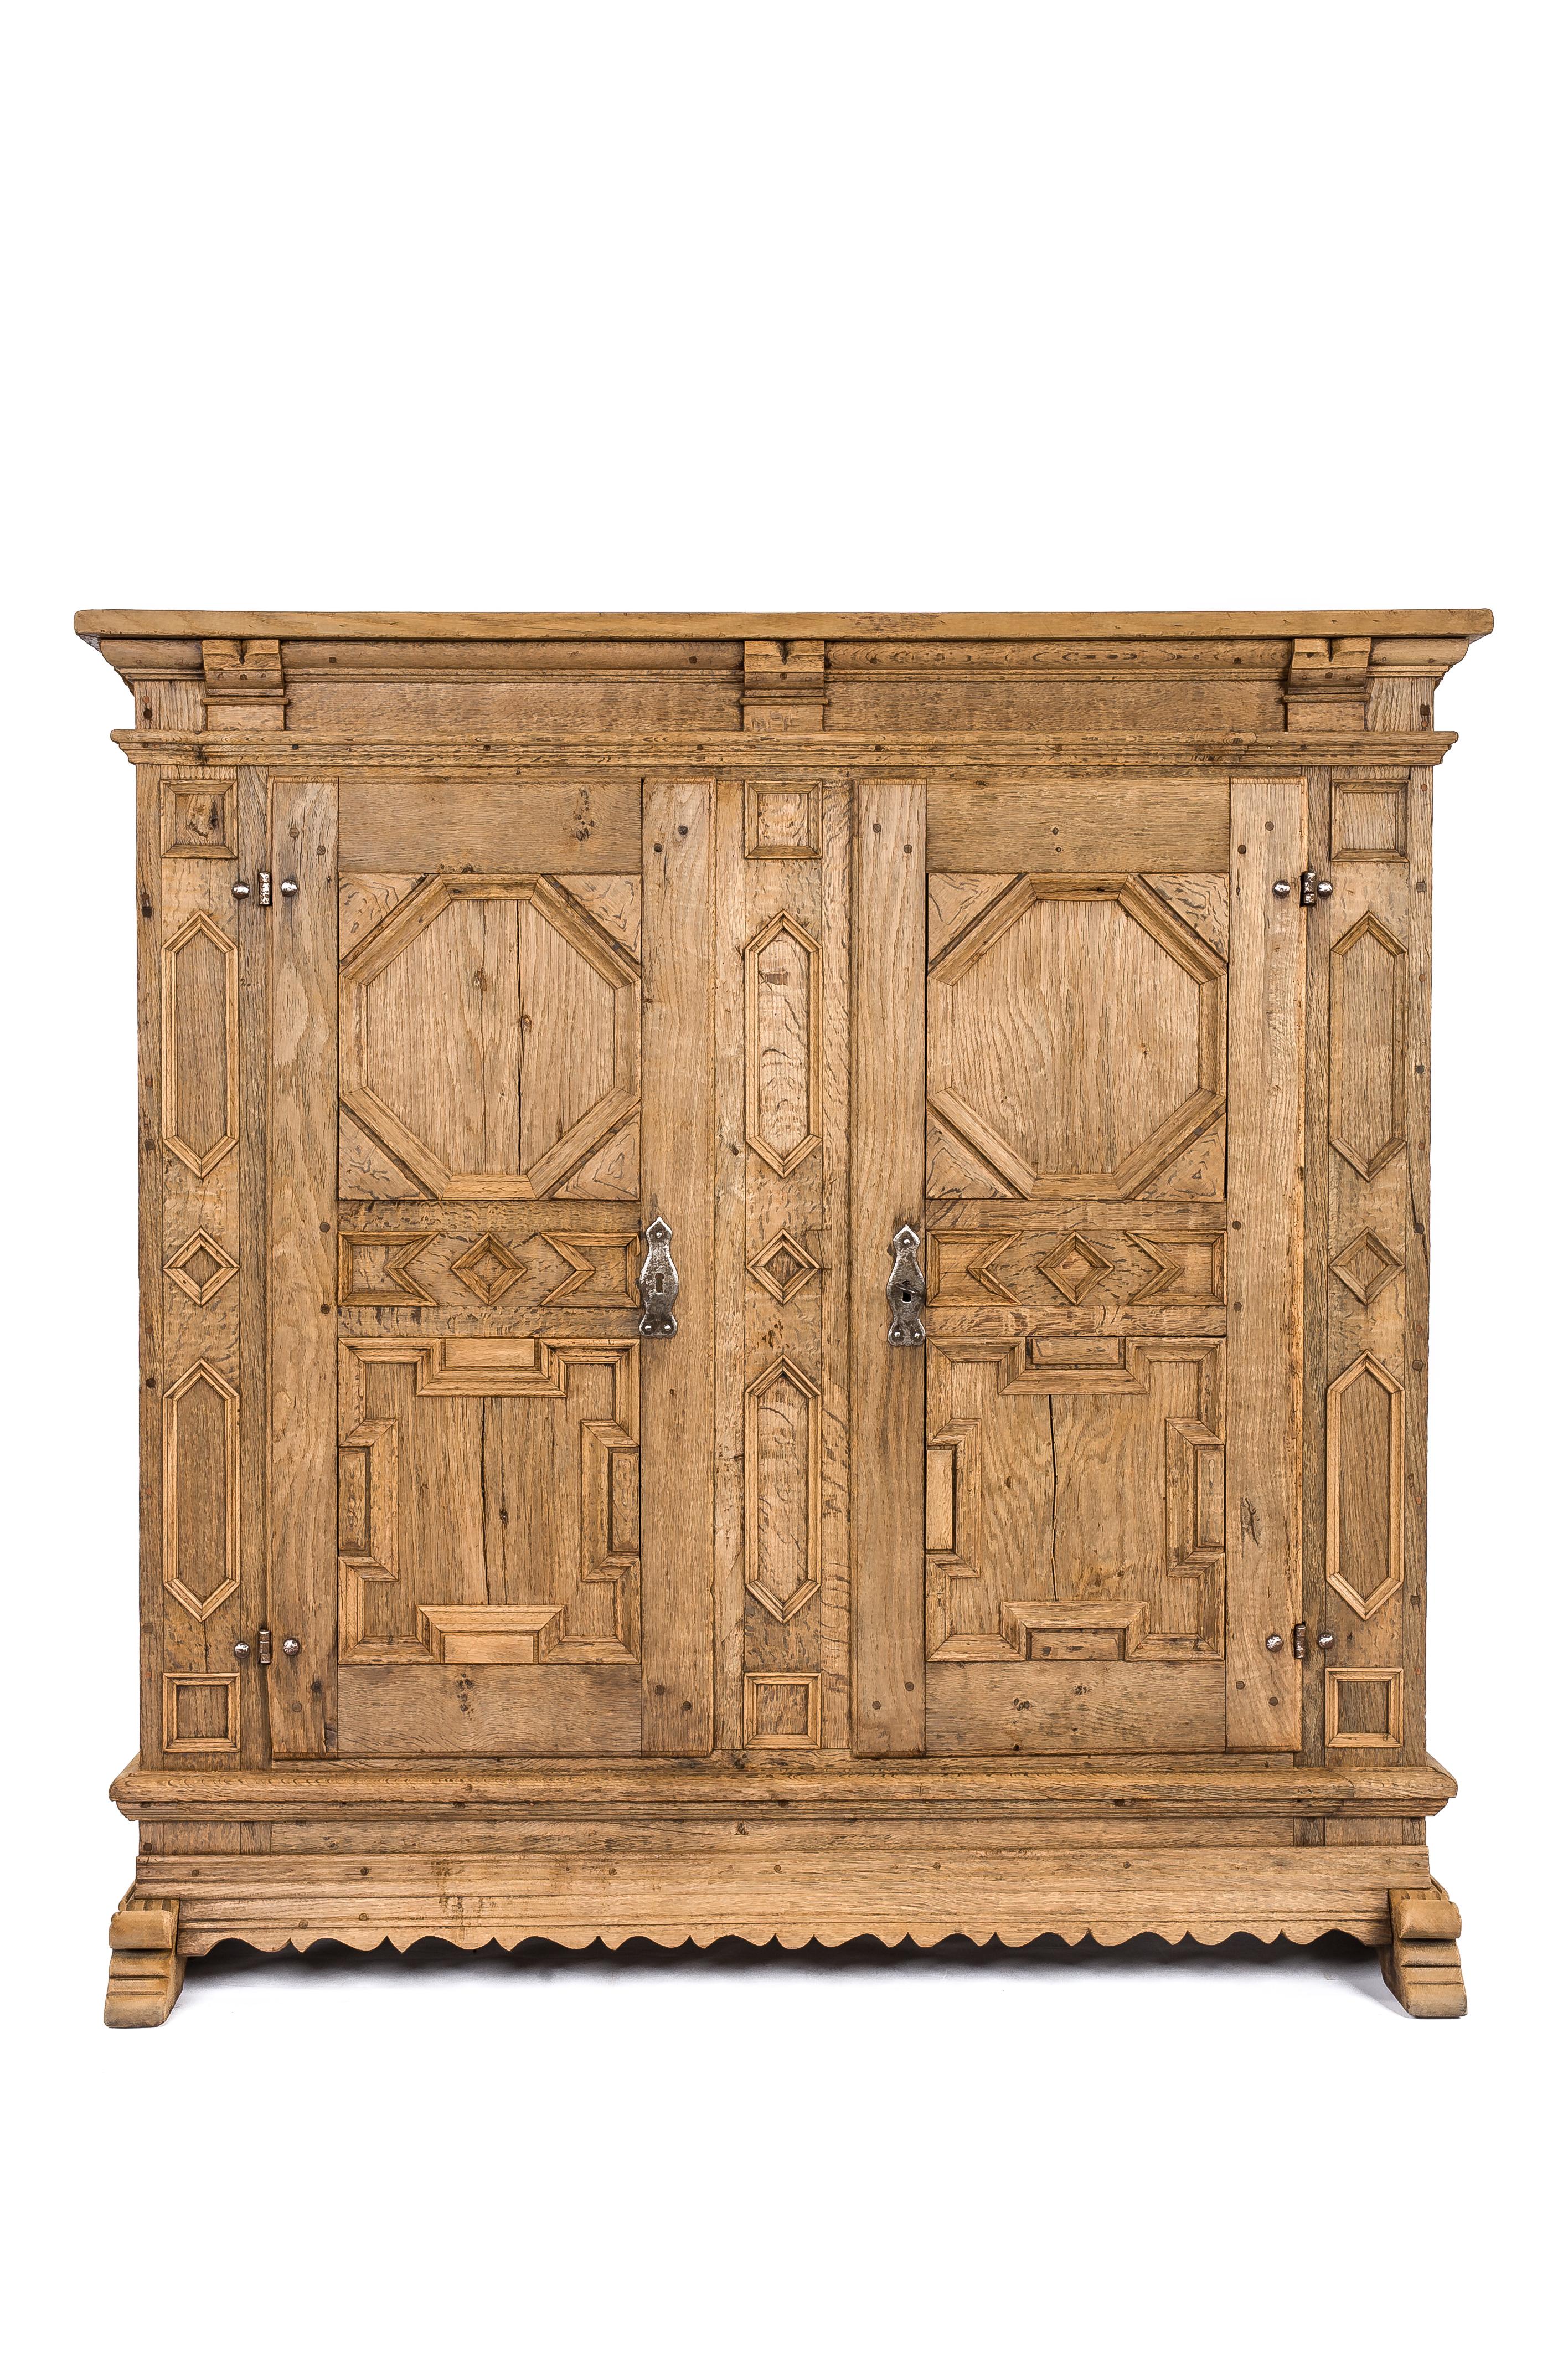 Une belle armoire ou cabinet baroque allemand du 18e siècle à deux portes. Fabriqué en chêne d'été européen massif pour durer des générations, il présente un design géométrique complexe et un rangement spacieux à l'intérieur. Il est originaire de la